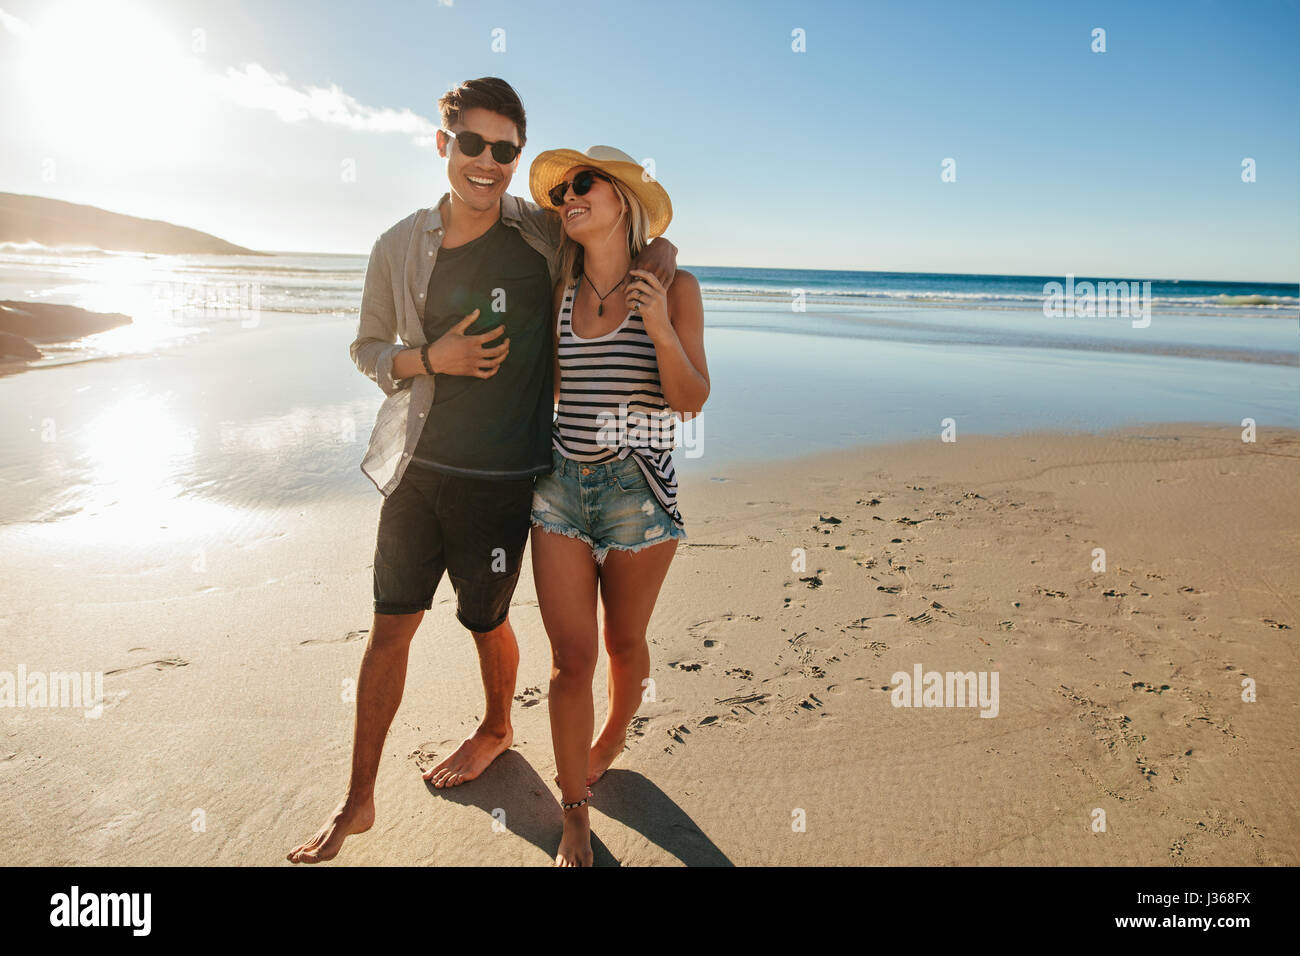 Une photo de couple walking on beach. Jeune homme et femme marche sur le littoral et sourit à une journée d'été. Banque D'Images